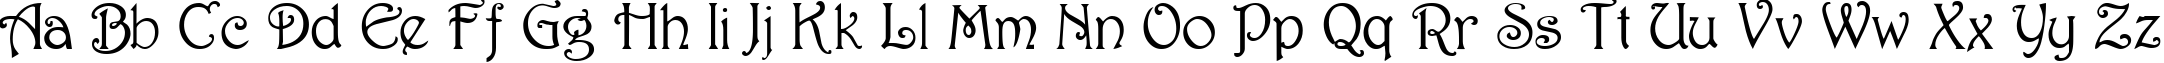 Пример написания английского алфавита шрифтом Parisian  Normal